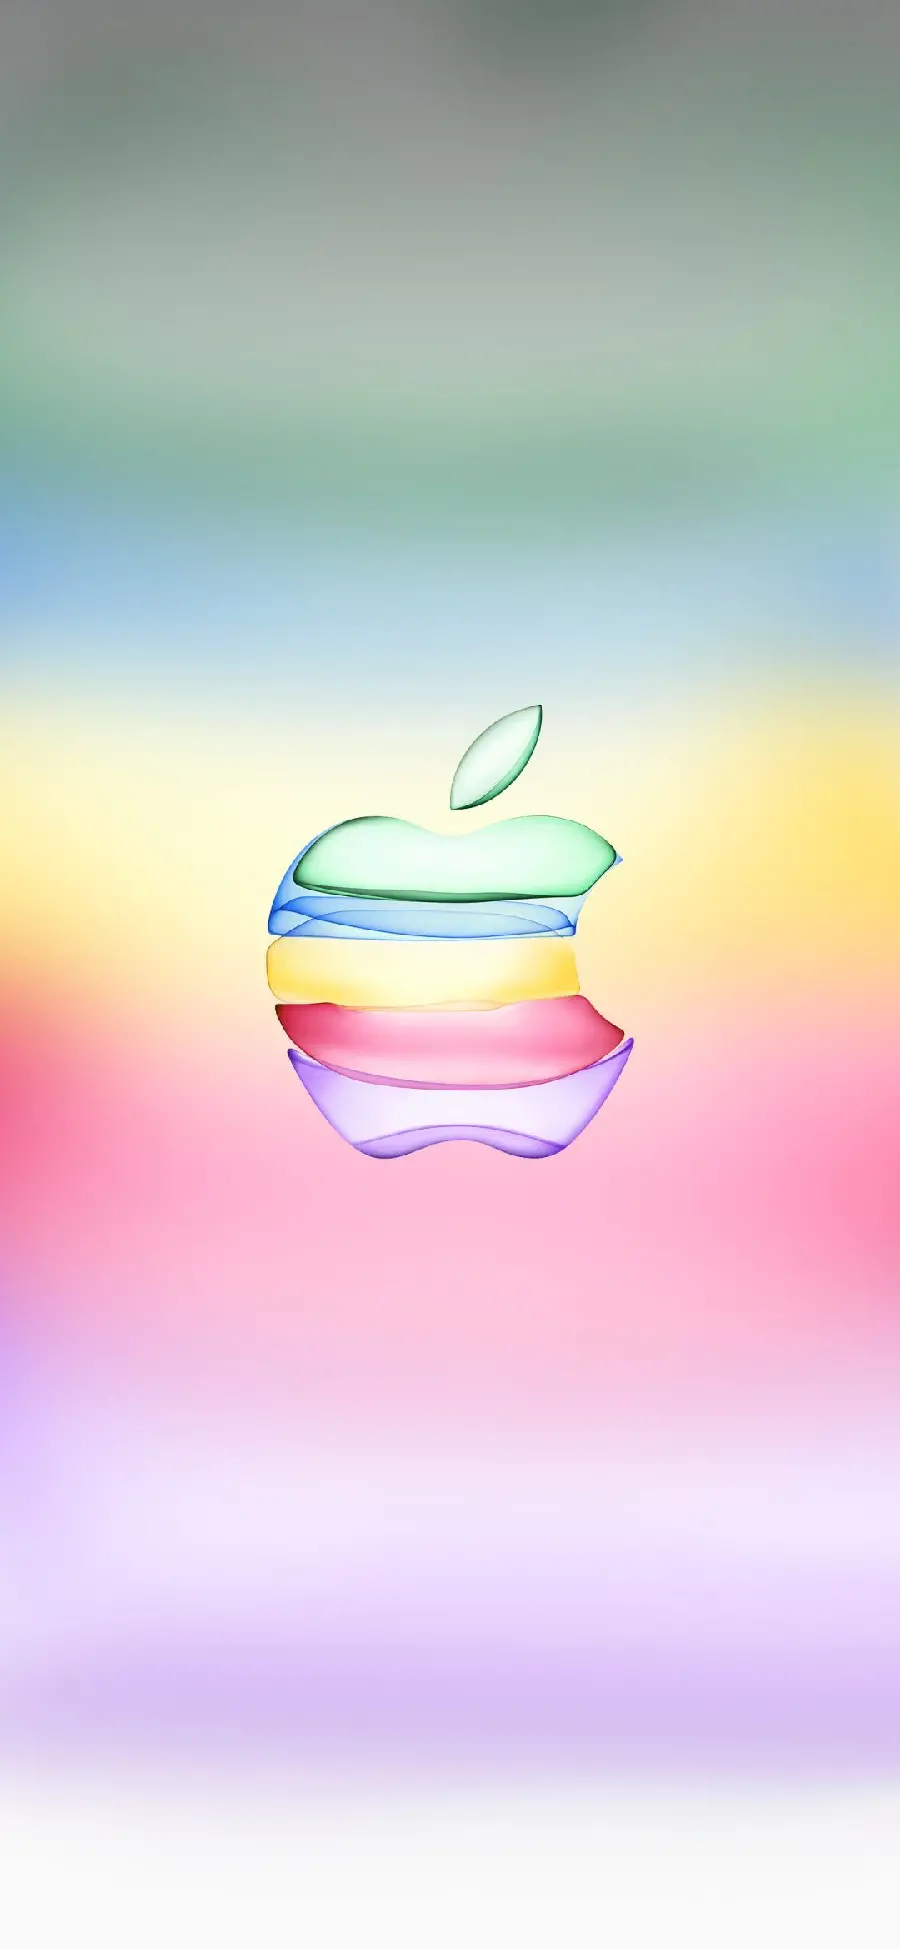 والپیپر سیب گاز زدە اپل رنگی با رنگ‌های سبز، آبی، زرد، قرمز، بنفش خاص این مدل گوشی اندرویدی